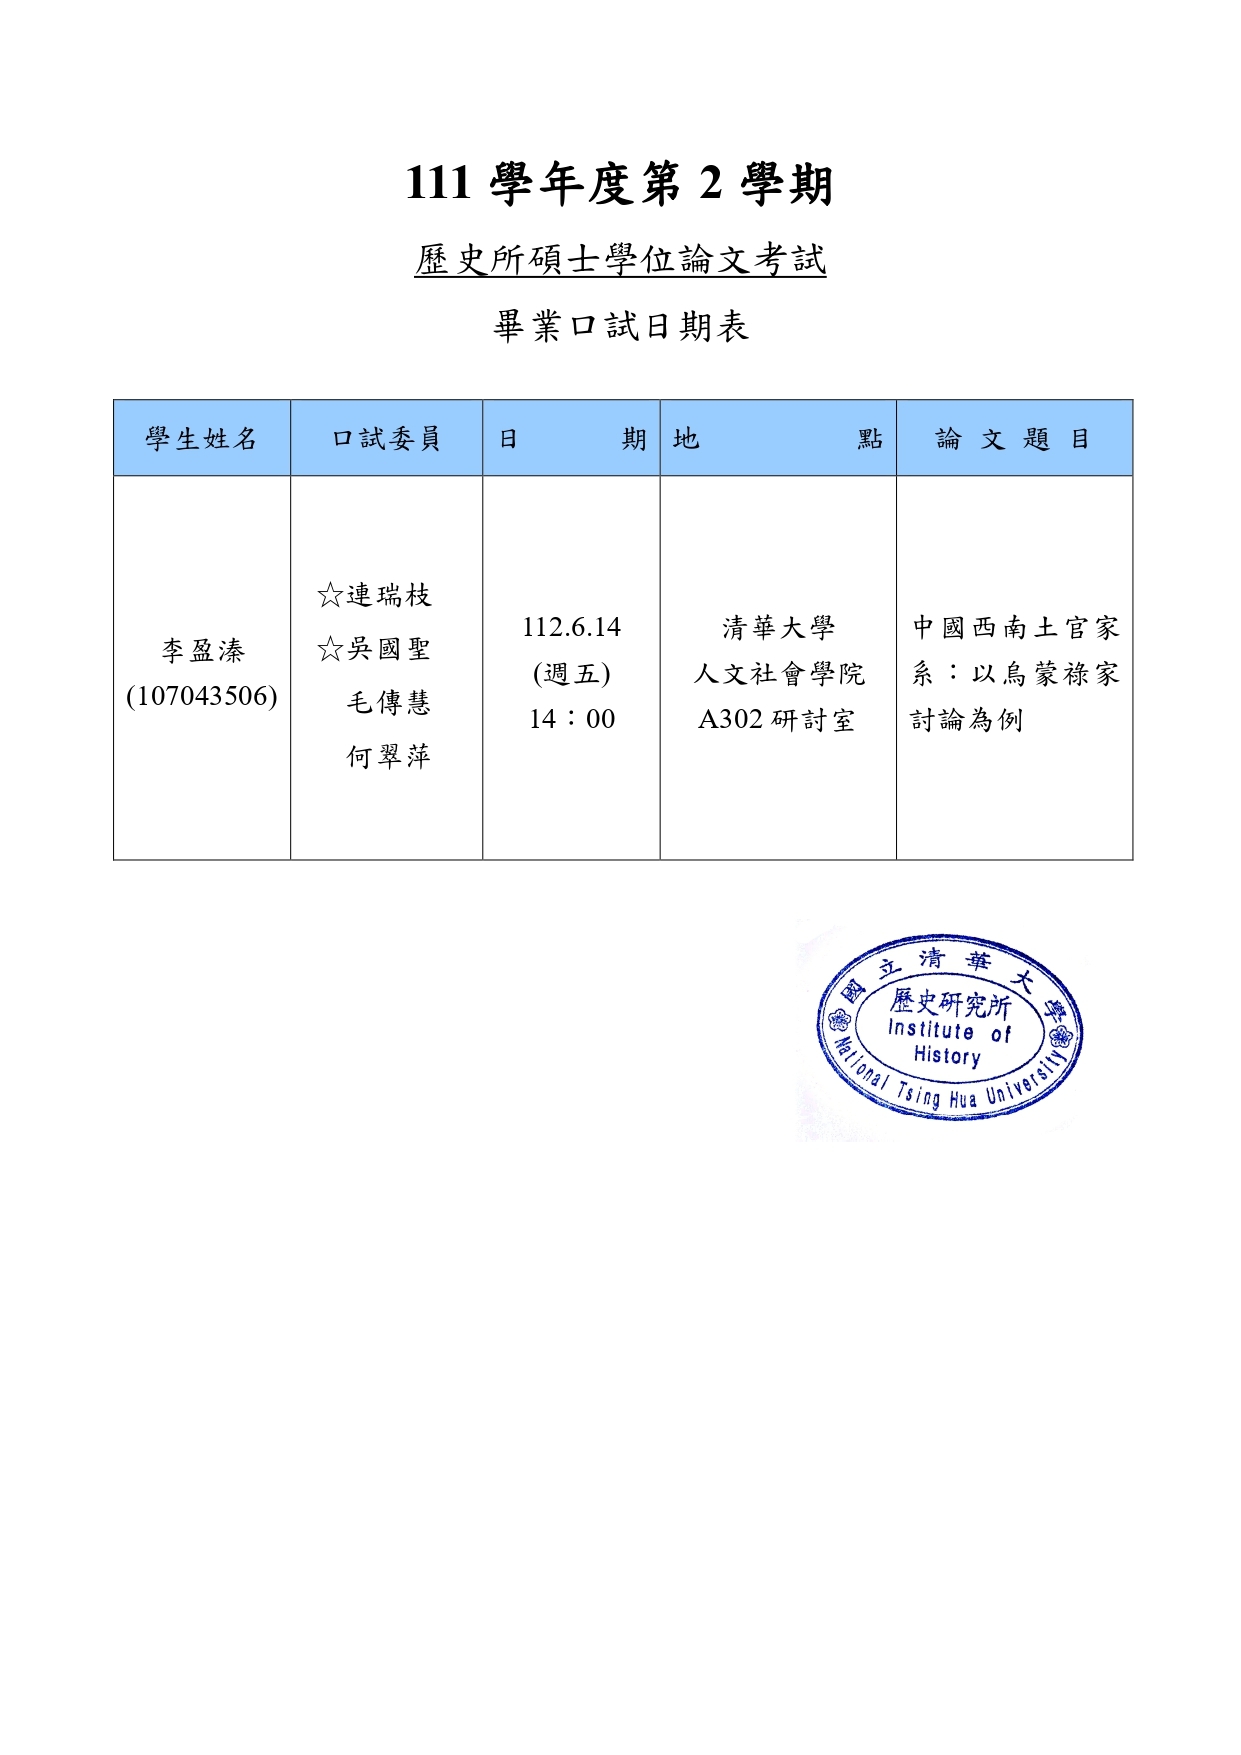 11206學位論文考試公告-李盈溱_page-0001